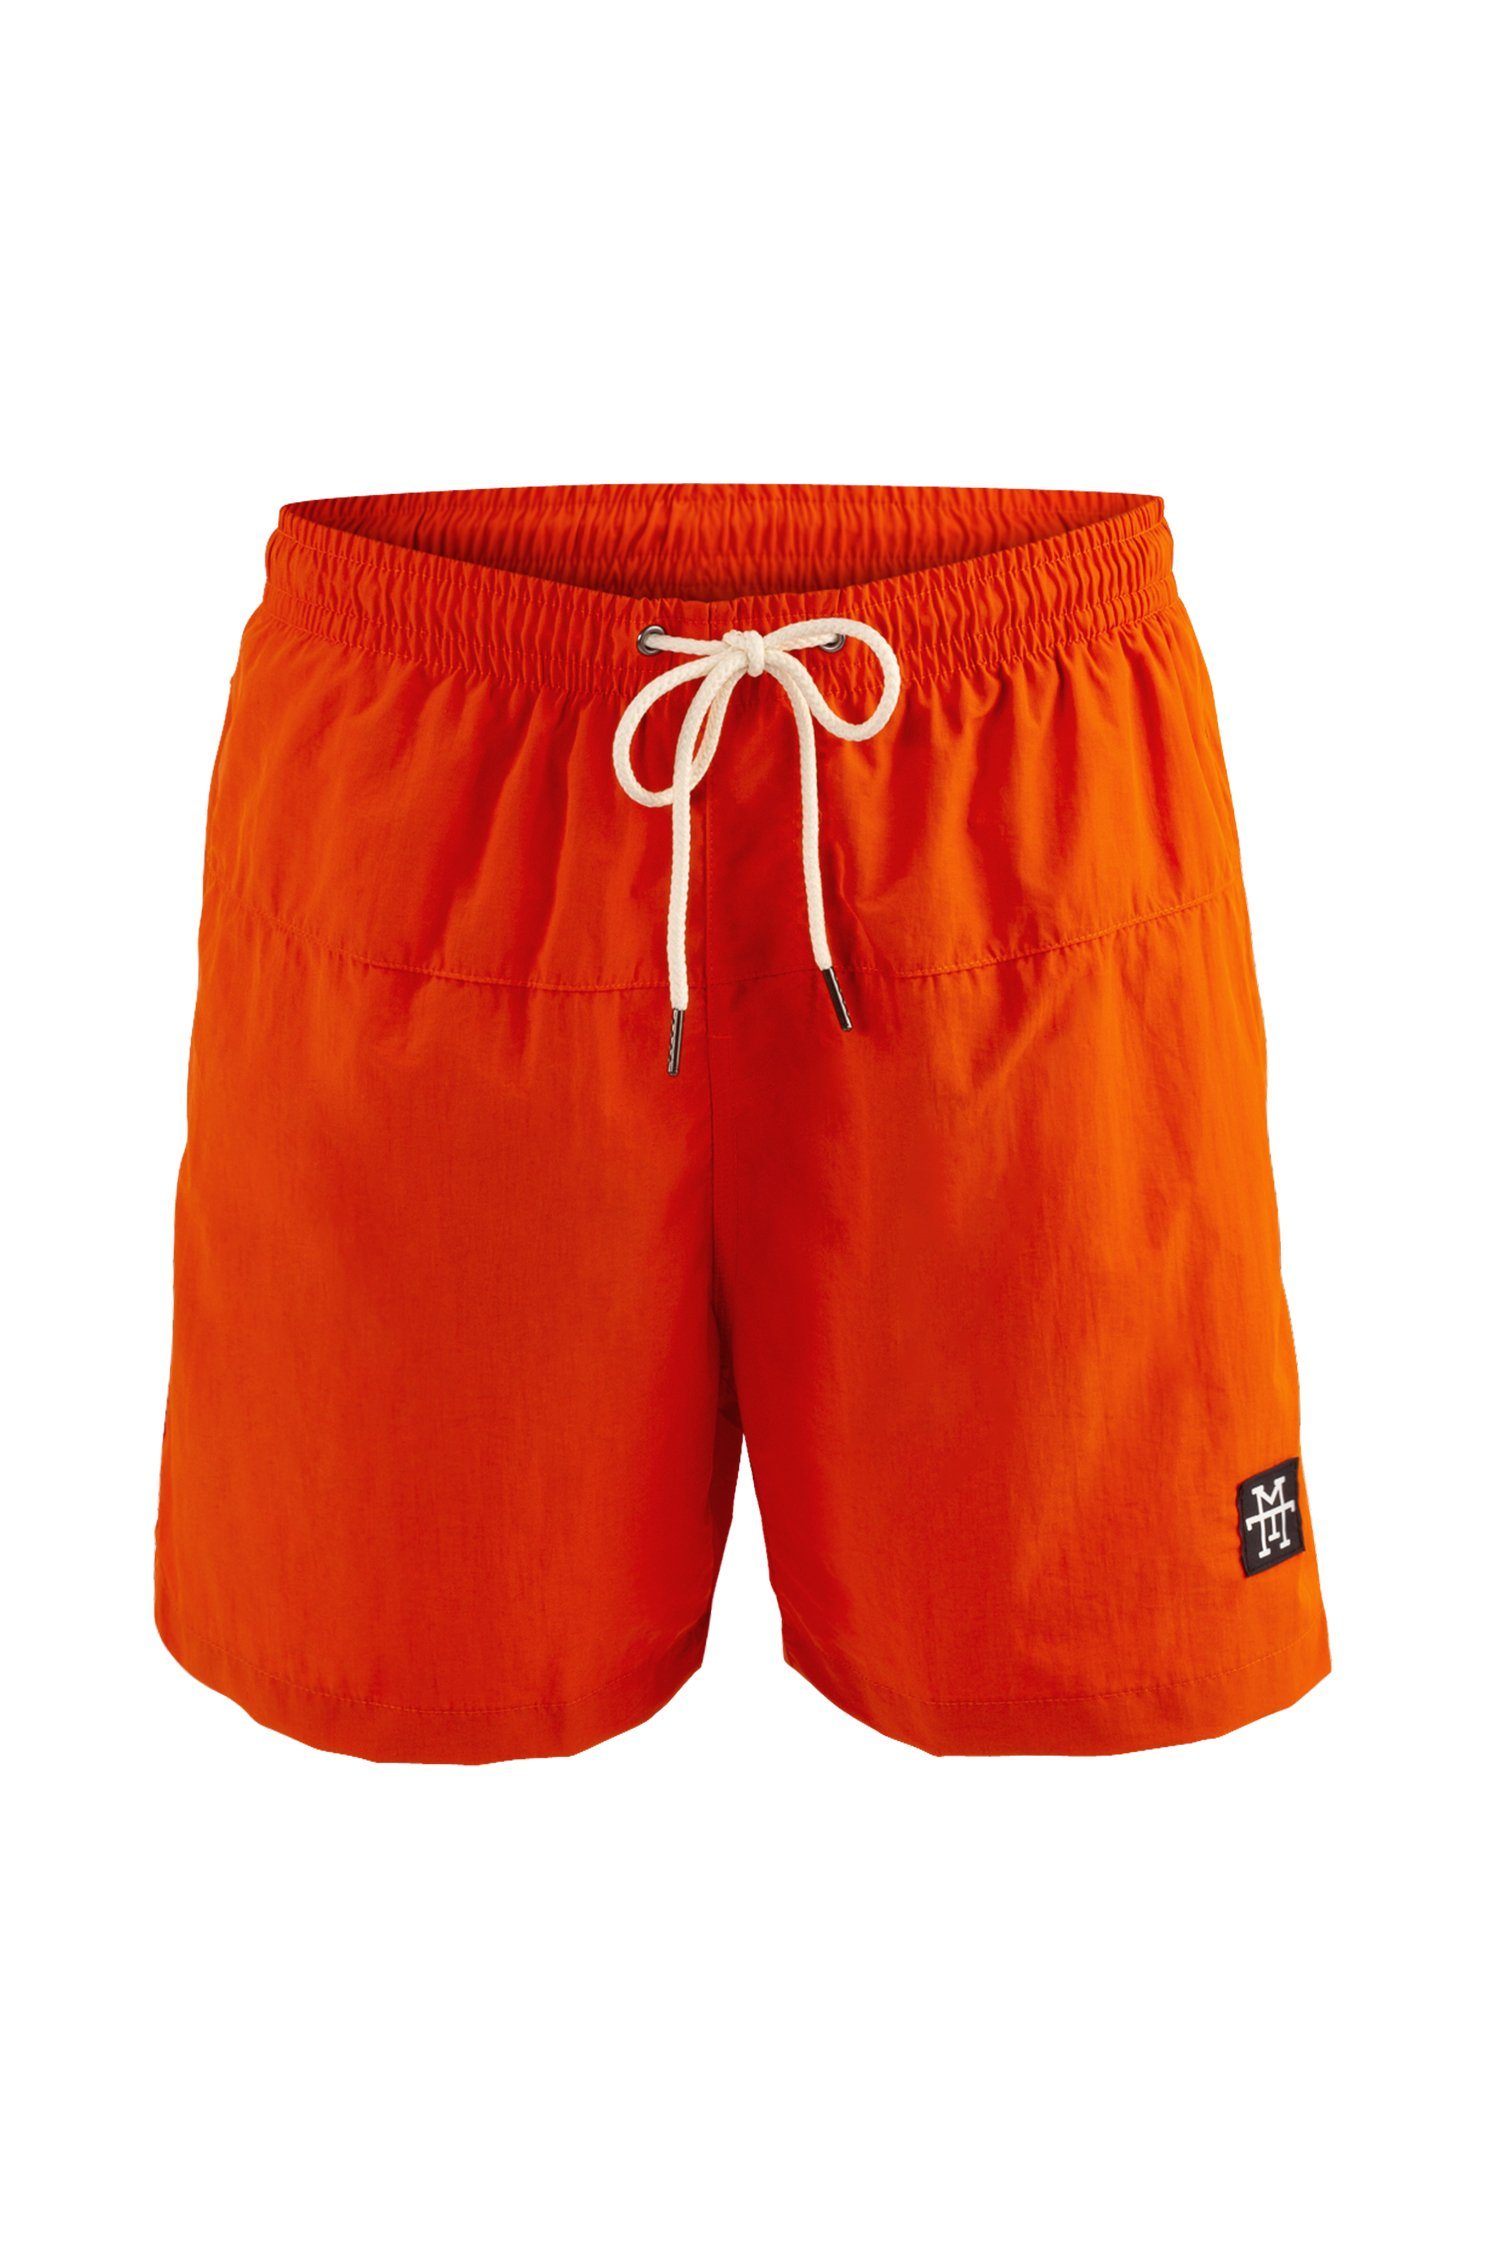 Manufaktur13 Badeshorts Shorts Badehosen Tangerine Swim - schnelltrocknend